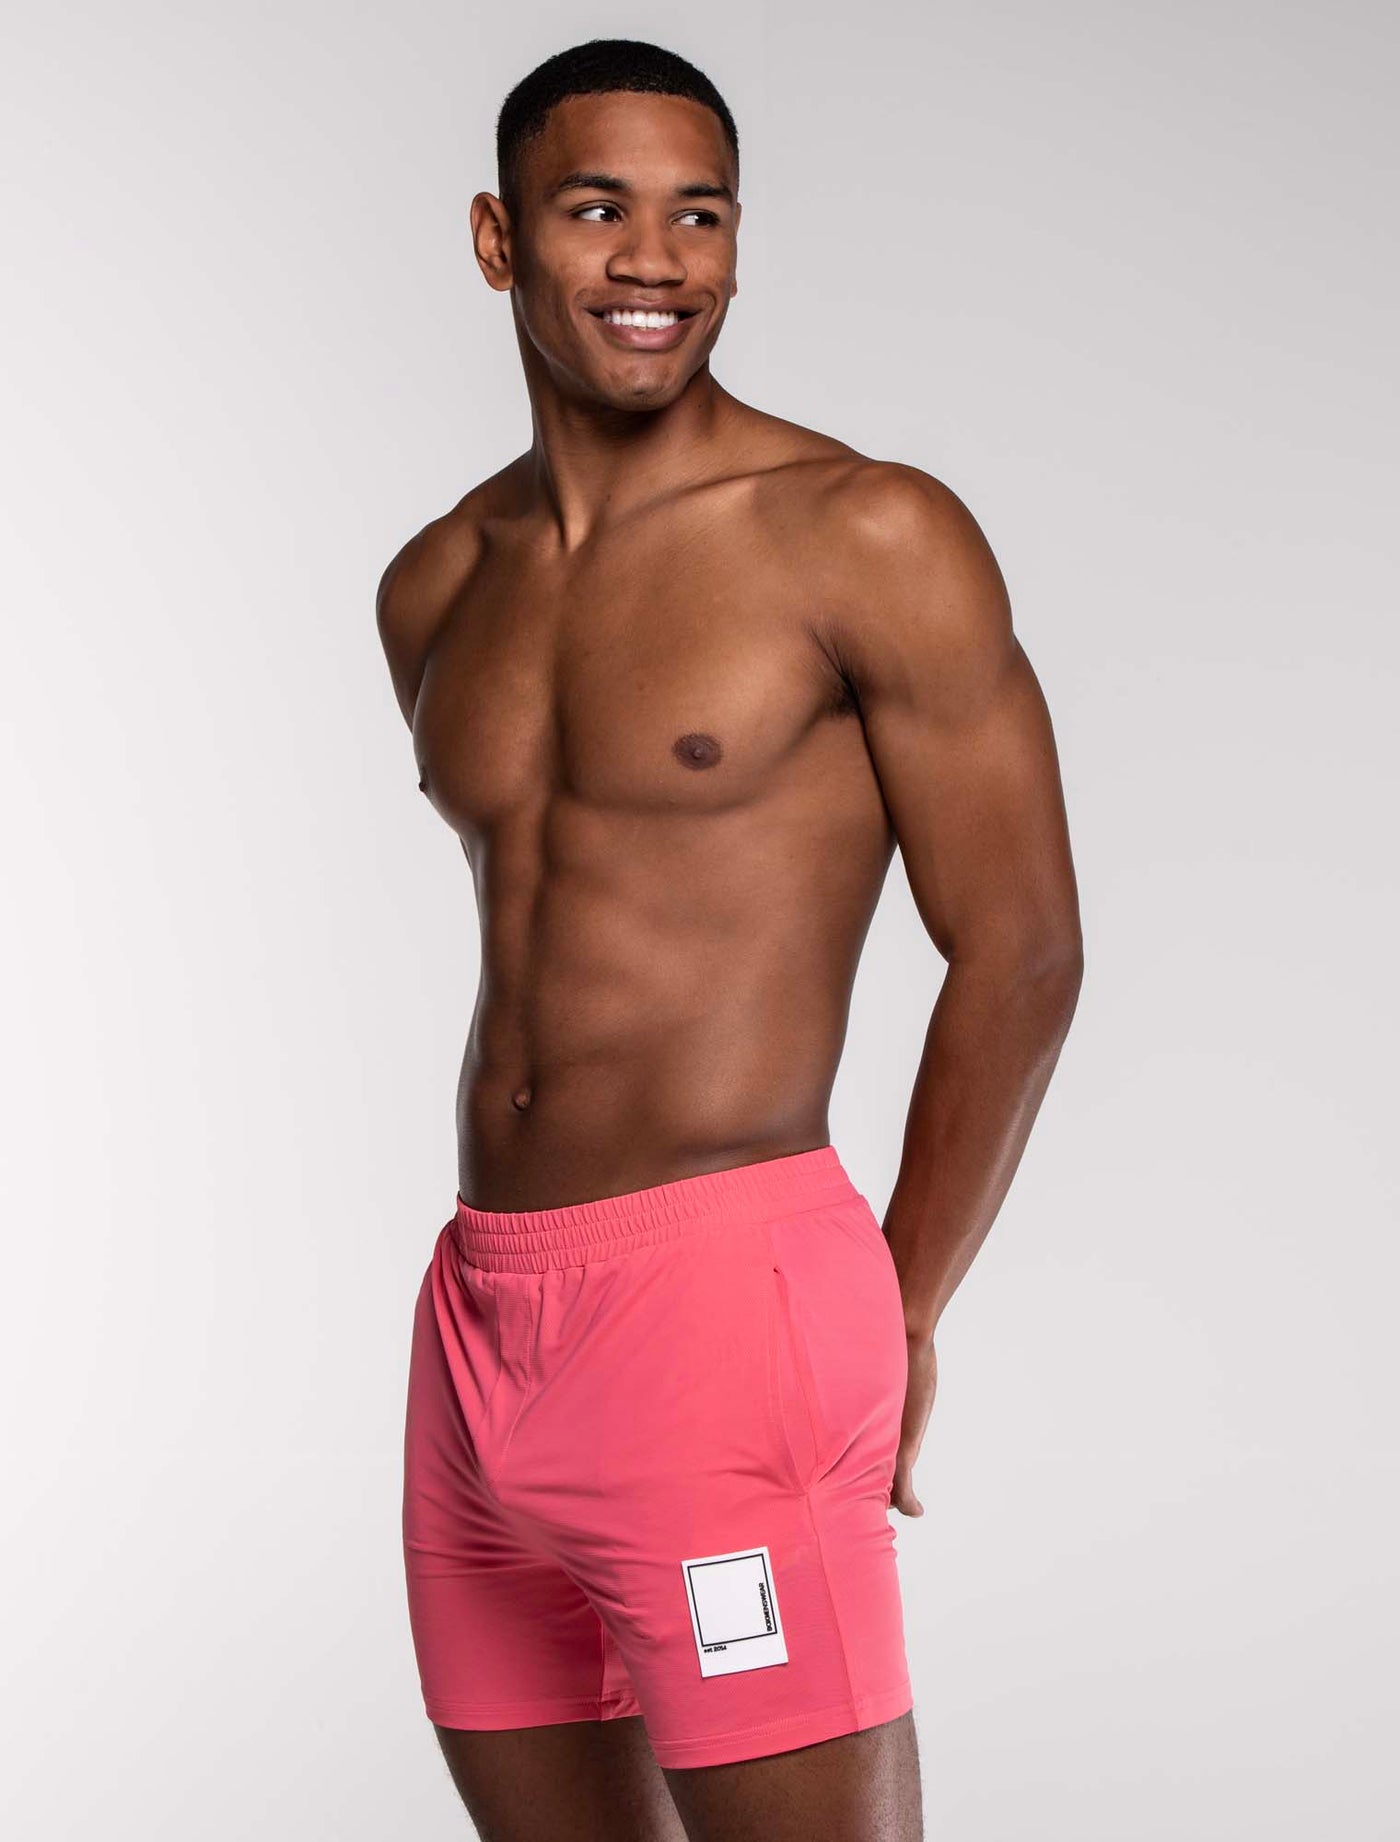 Mesh Football Shorts - Mascot Pink - boxmenswear - {{variant_title}}